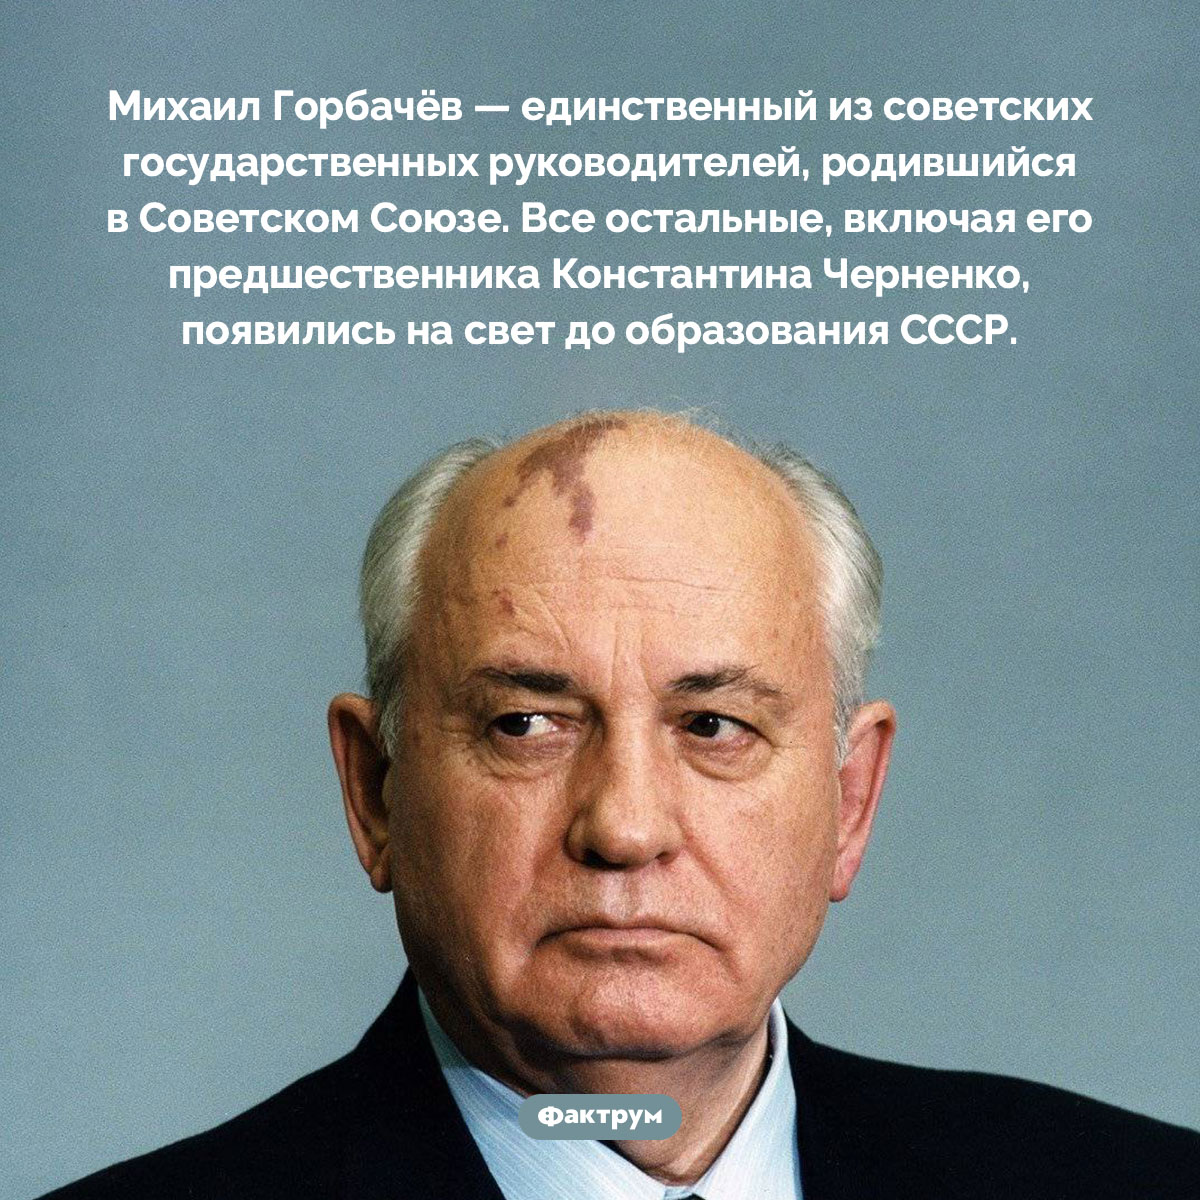 Из всех советских лидеров только Михаил Горбачёв родился при СССР. Михаил Горбачёв — единственный из советских государственных руководителей, родившийся в Советском Союзе. Все остальные, включая его предшественника Константина Черненко, появились на свет до образования СССР.